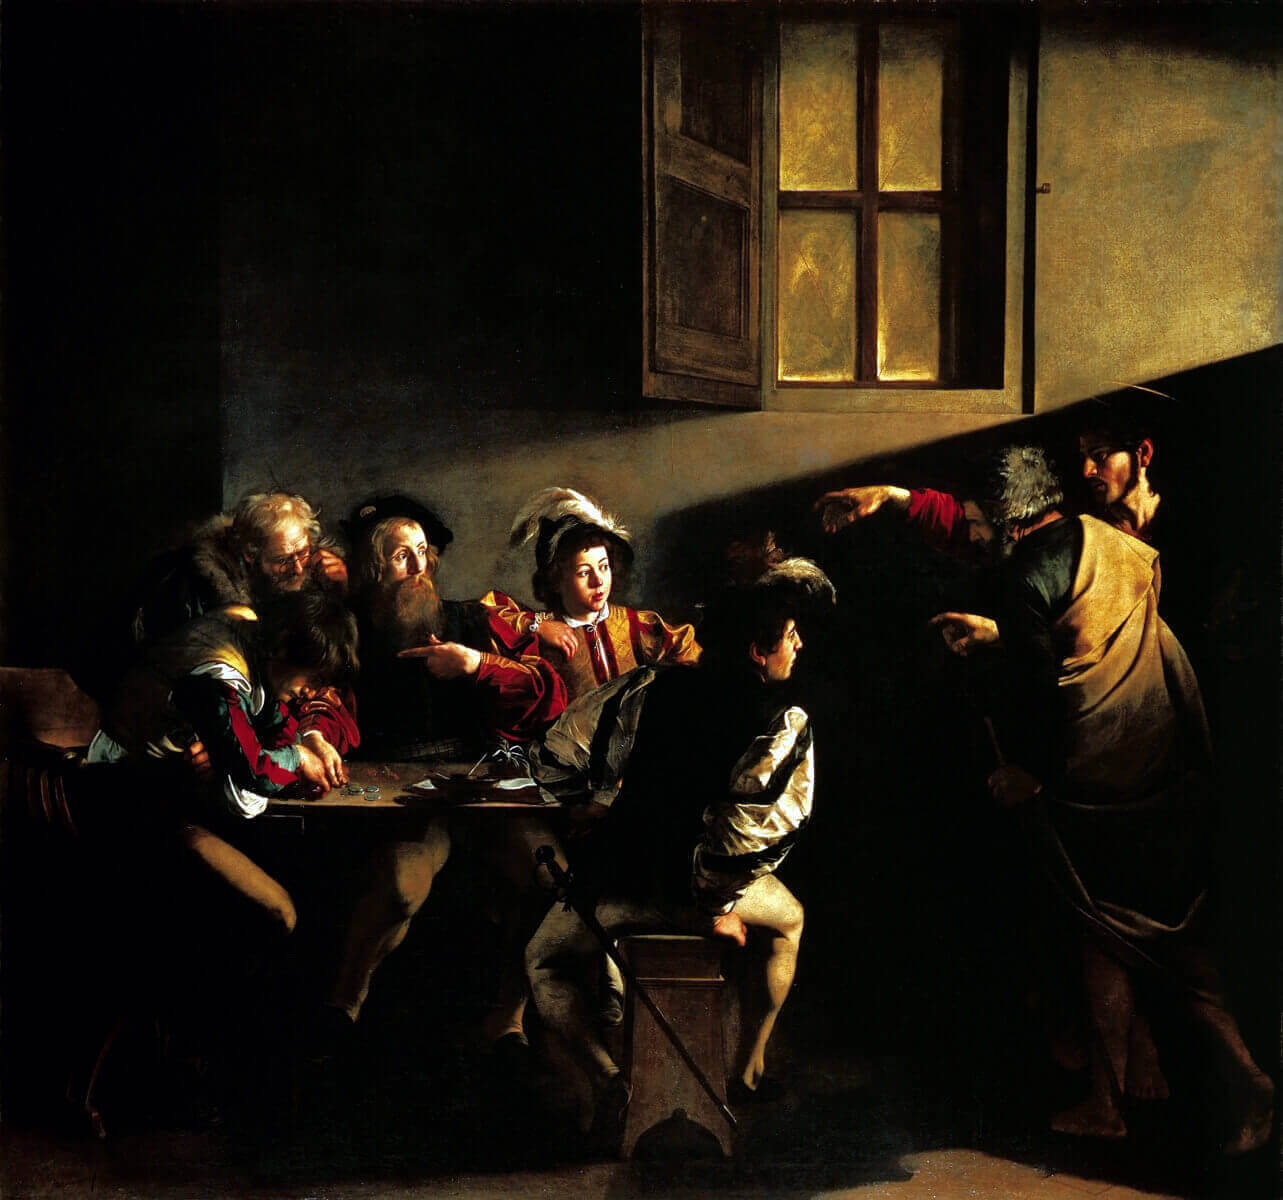 Картина Караваджо "Призвание Святого Матфея" в церкви Сан Луиджи дей Франчеси в Риме.